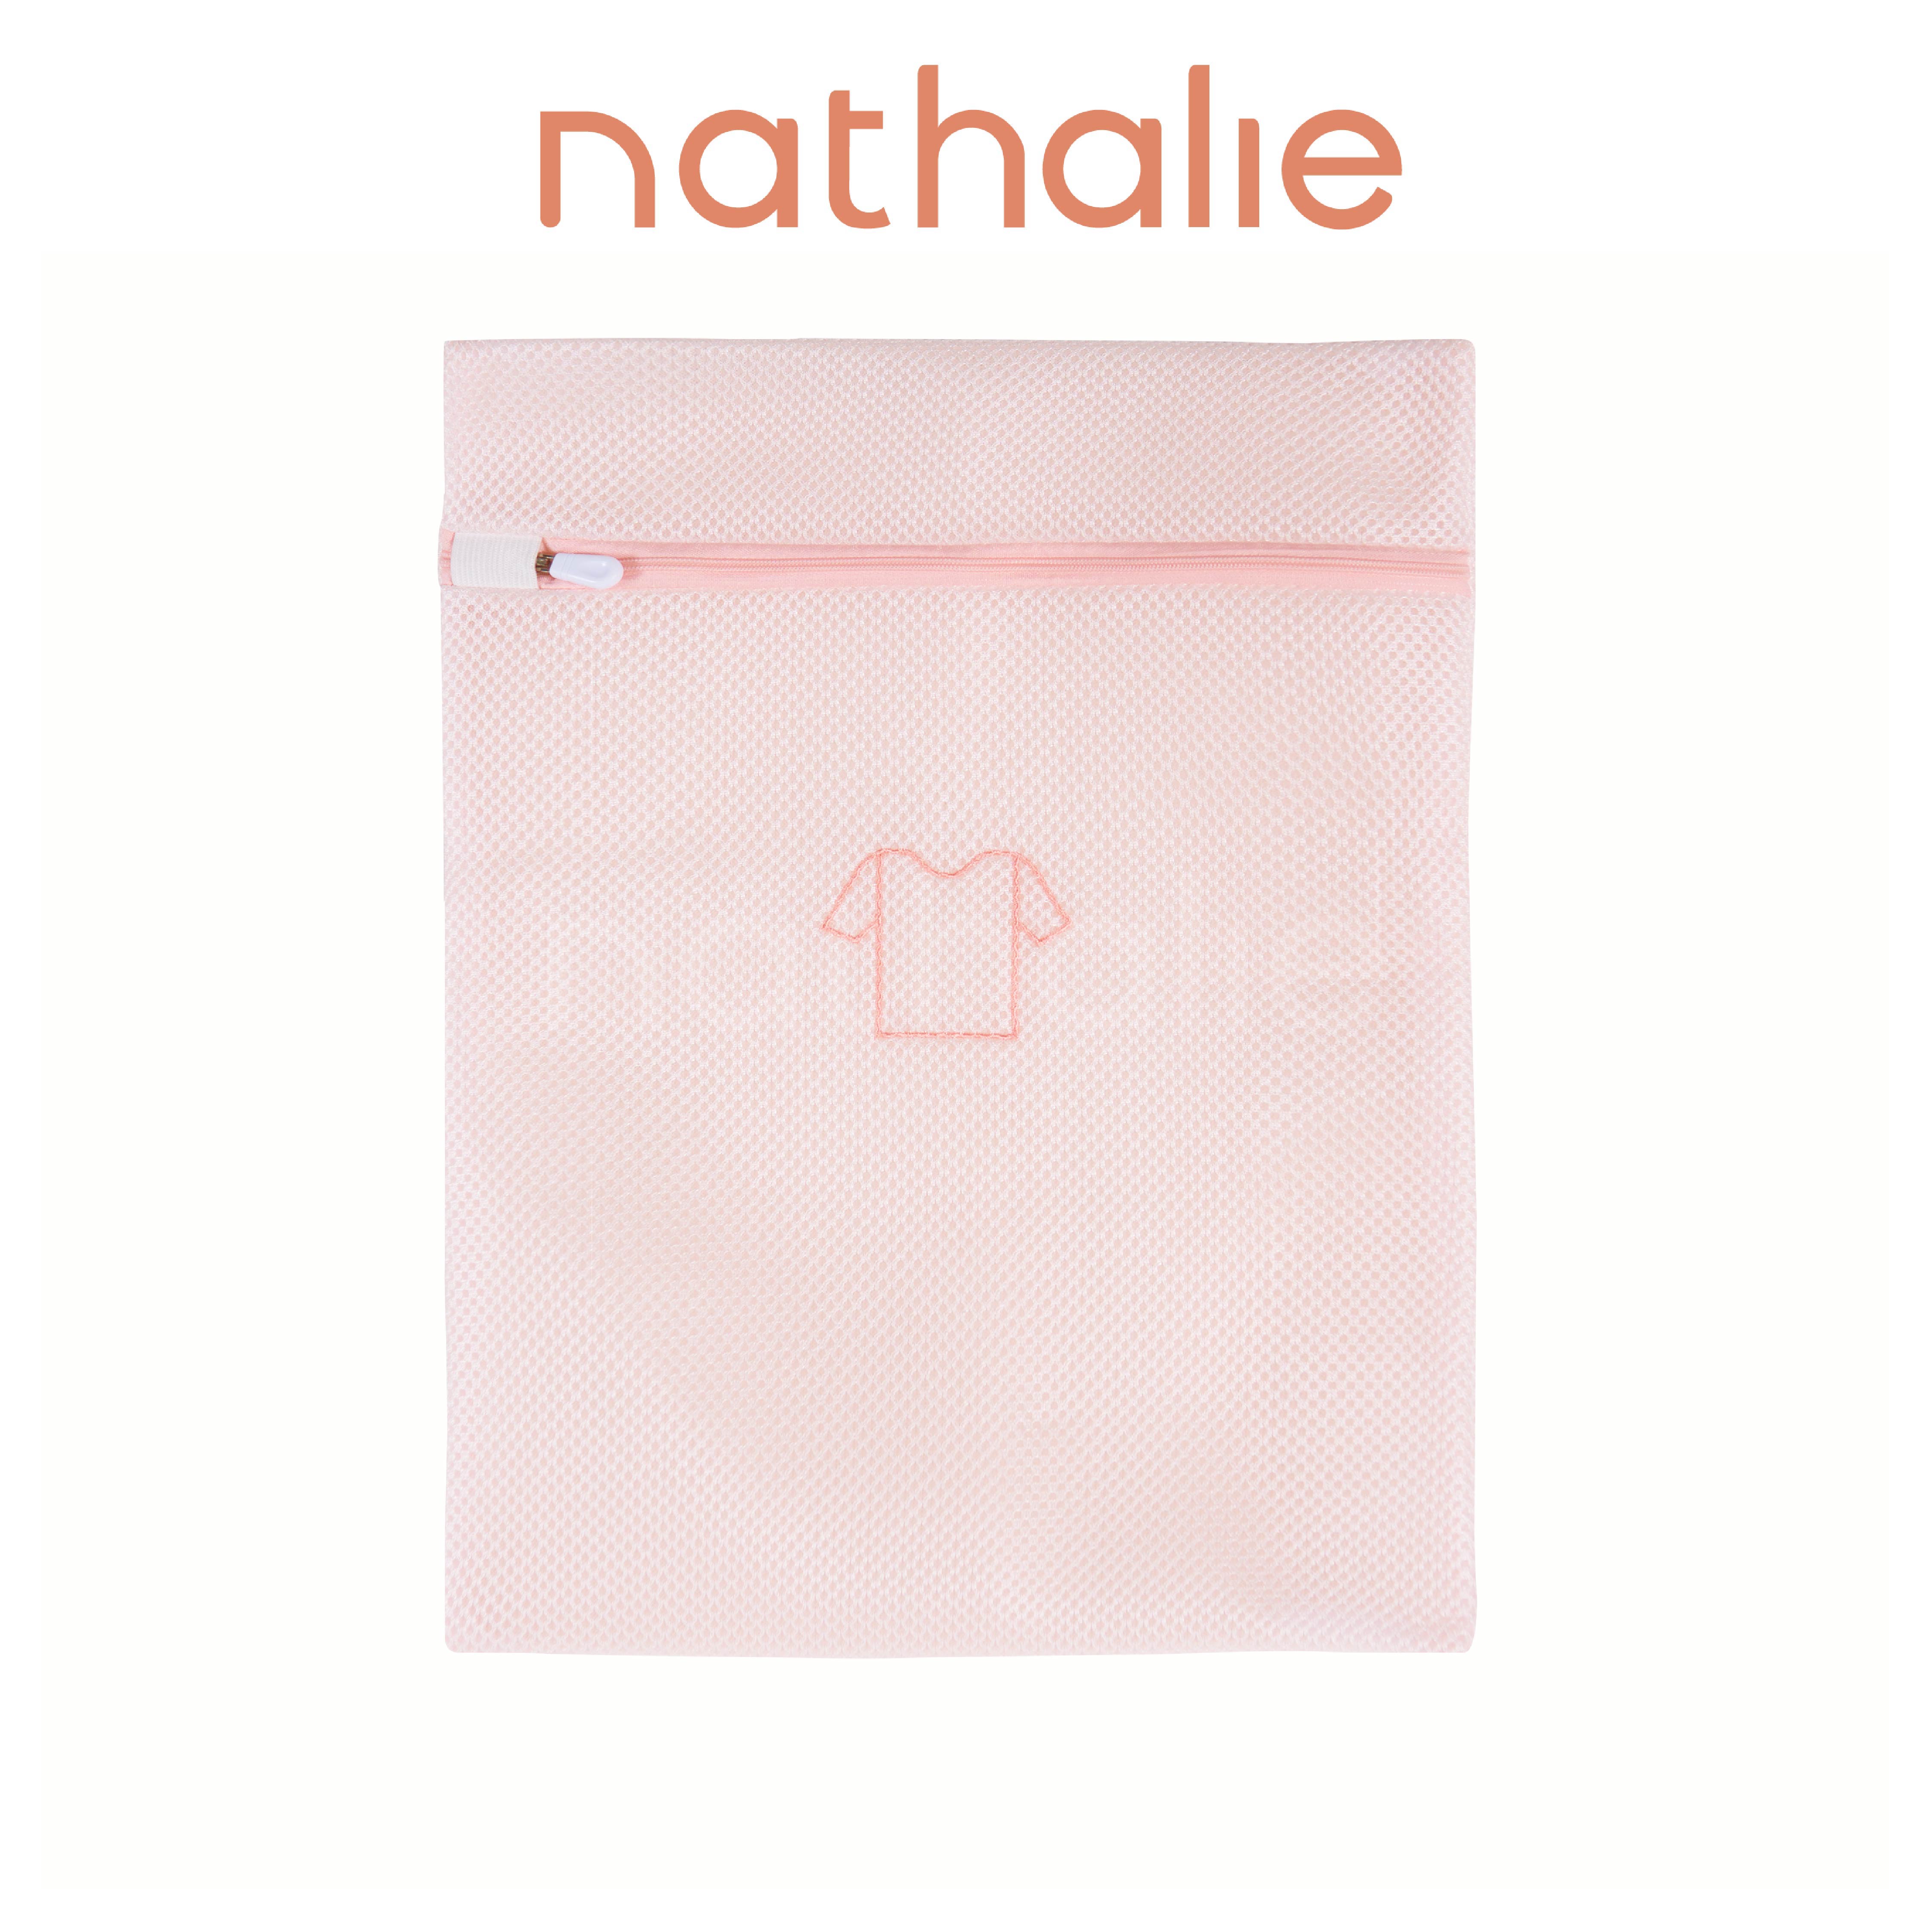 Nathalie Kantong Cuci Pakaian Cloth Laundry Washing Bag 1 Pcs ACC WB 06